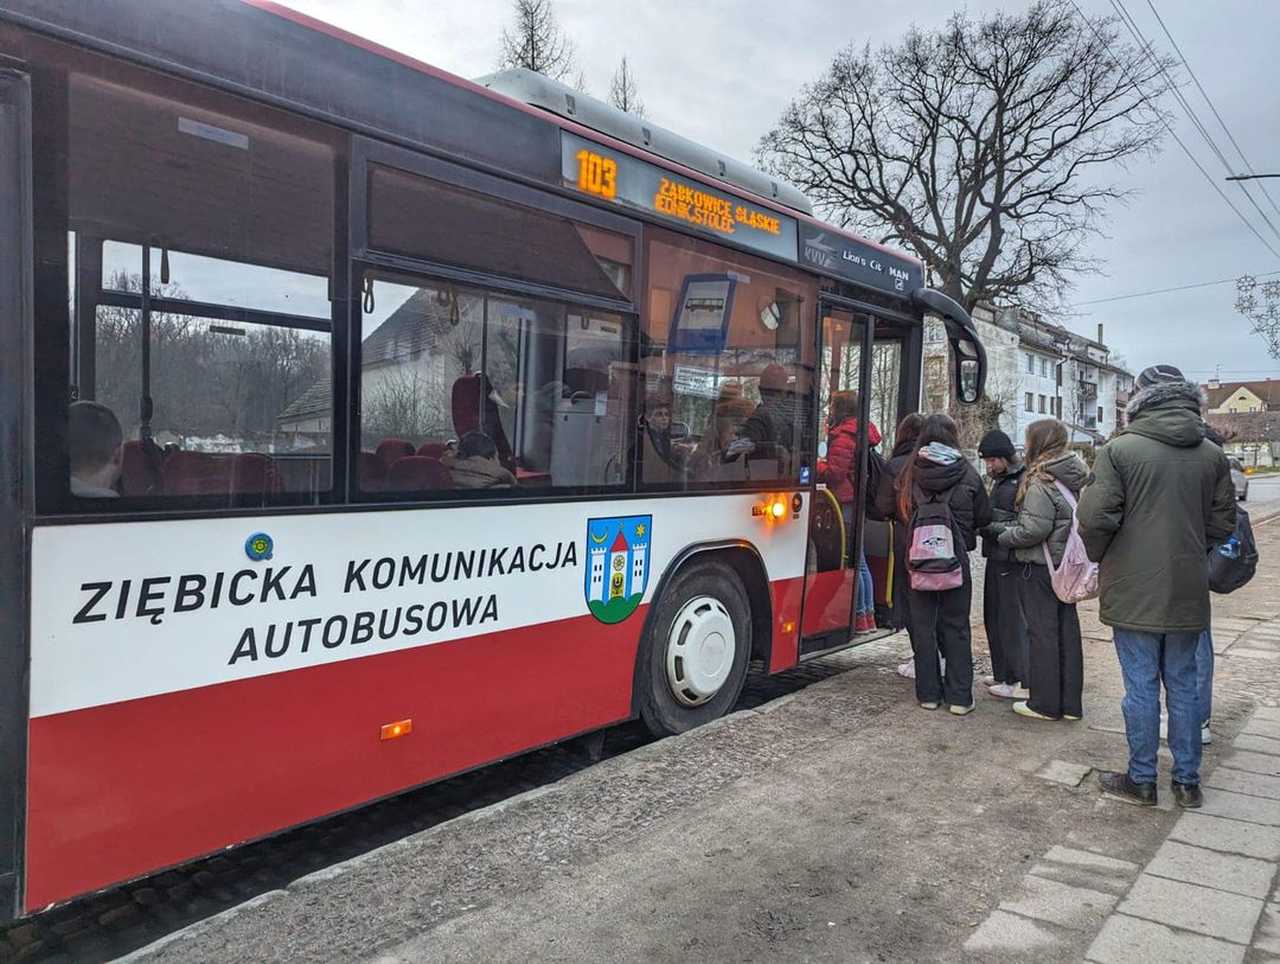 UWAGA! Ważna informacja dla Pasażerów Ziębickiej Komunikacji Autobusowej!